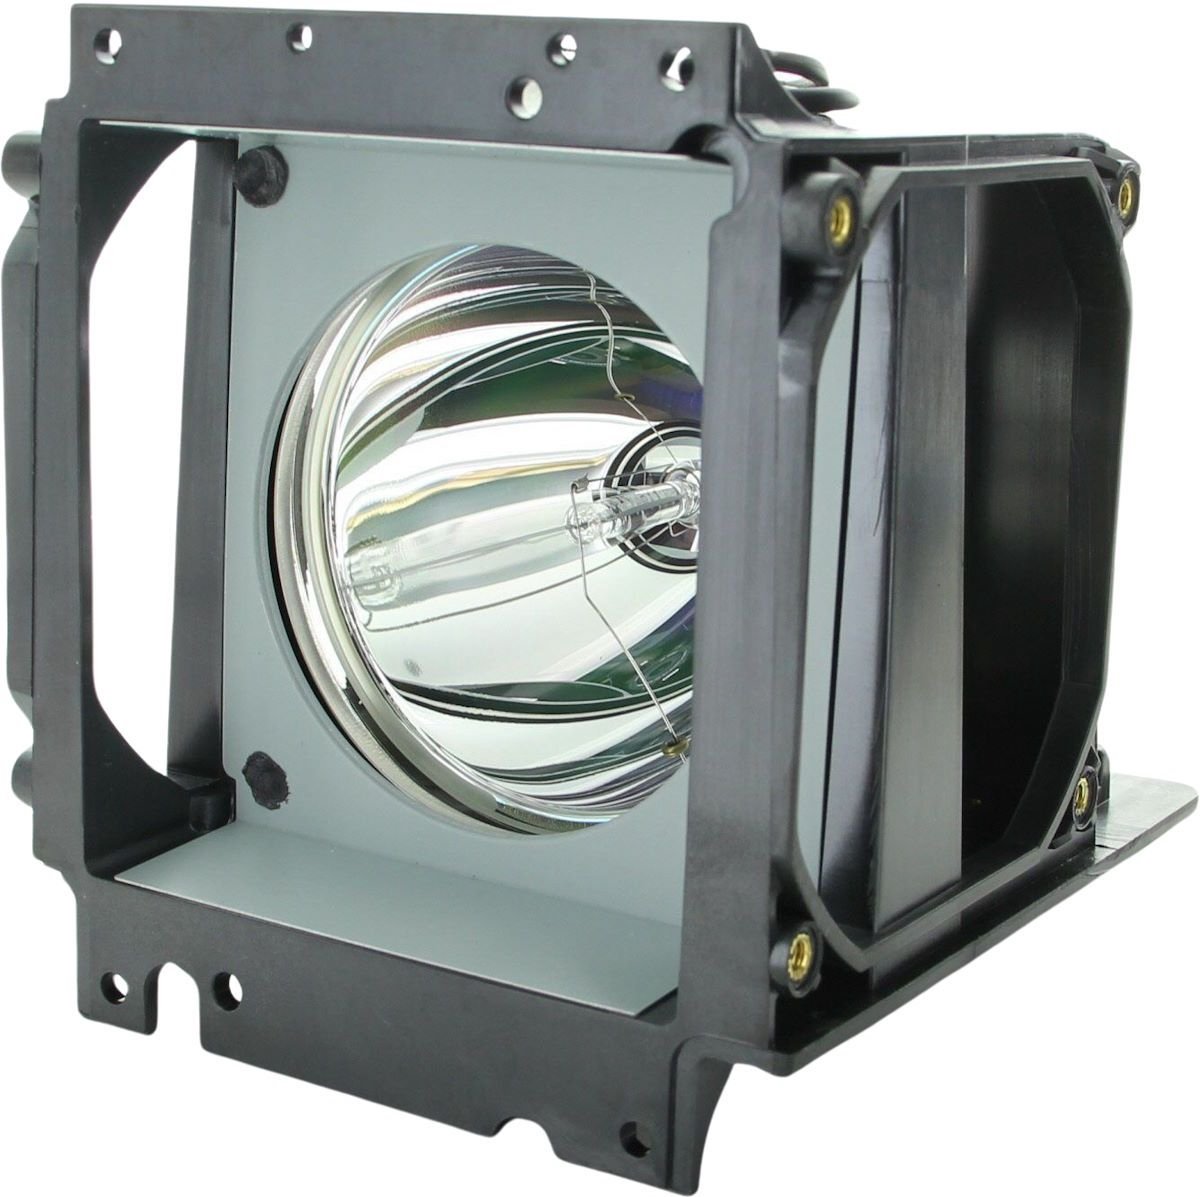 Beamerlamp geschikt voor de PLANAR Clarity c67RPi beamer, lamp code 150-0142 / 151-0005 / 151-1063. Bevat originele P-VIP lamp, prestaties gelijk aan origineel.